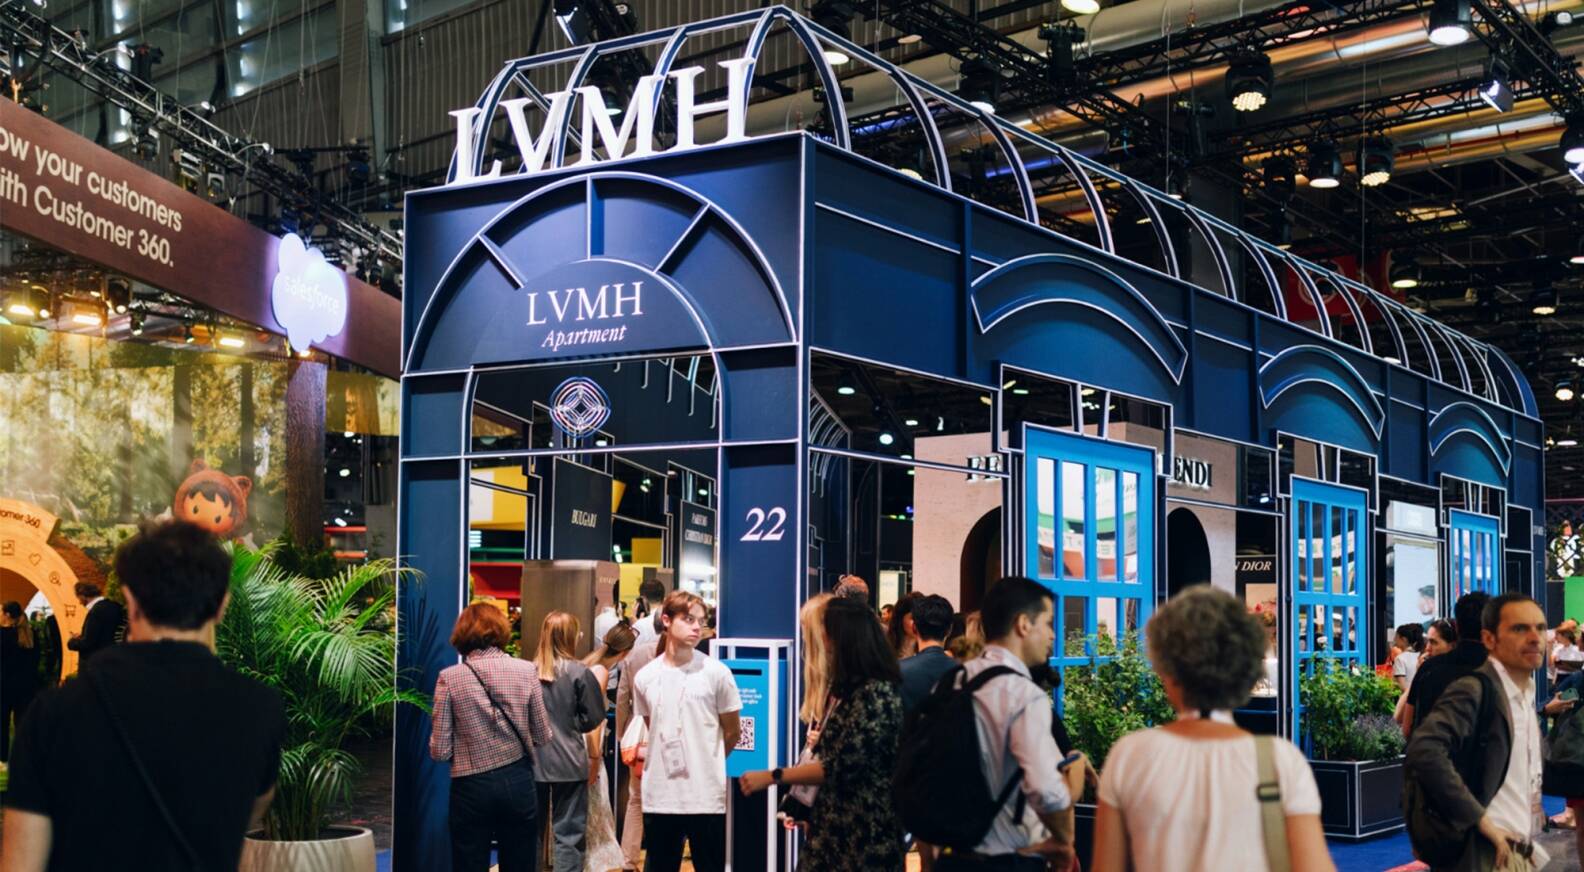 LVMH - On June 25, LVMH House hosted a Brand Desirability